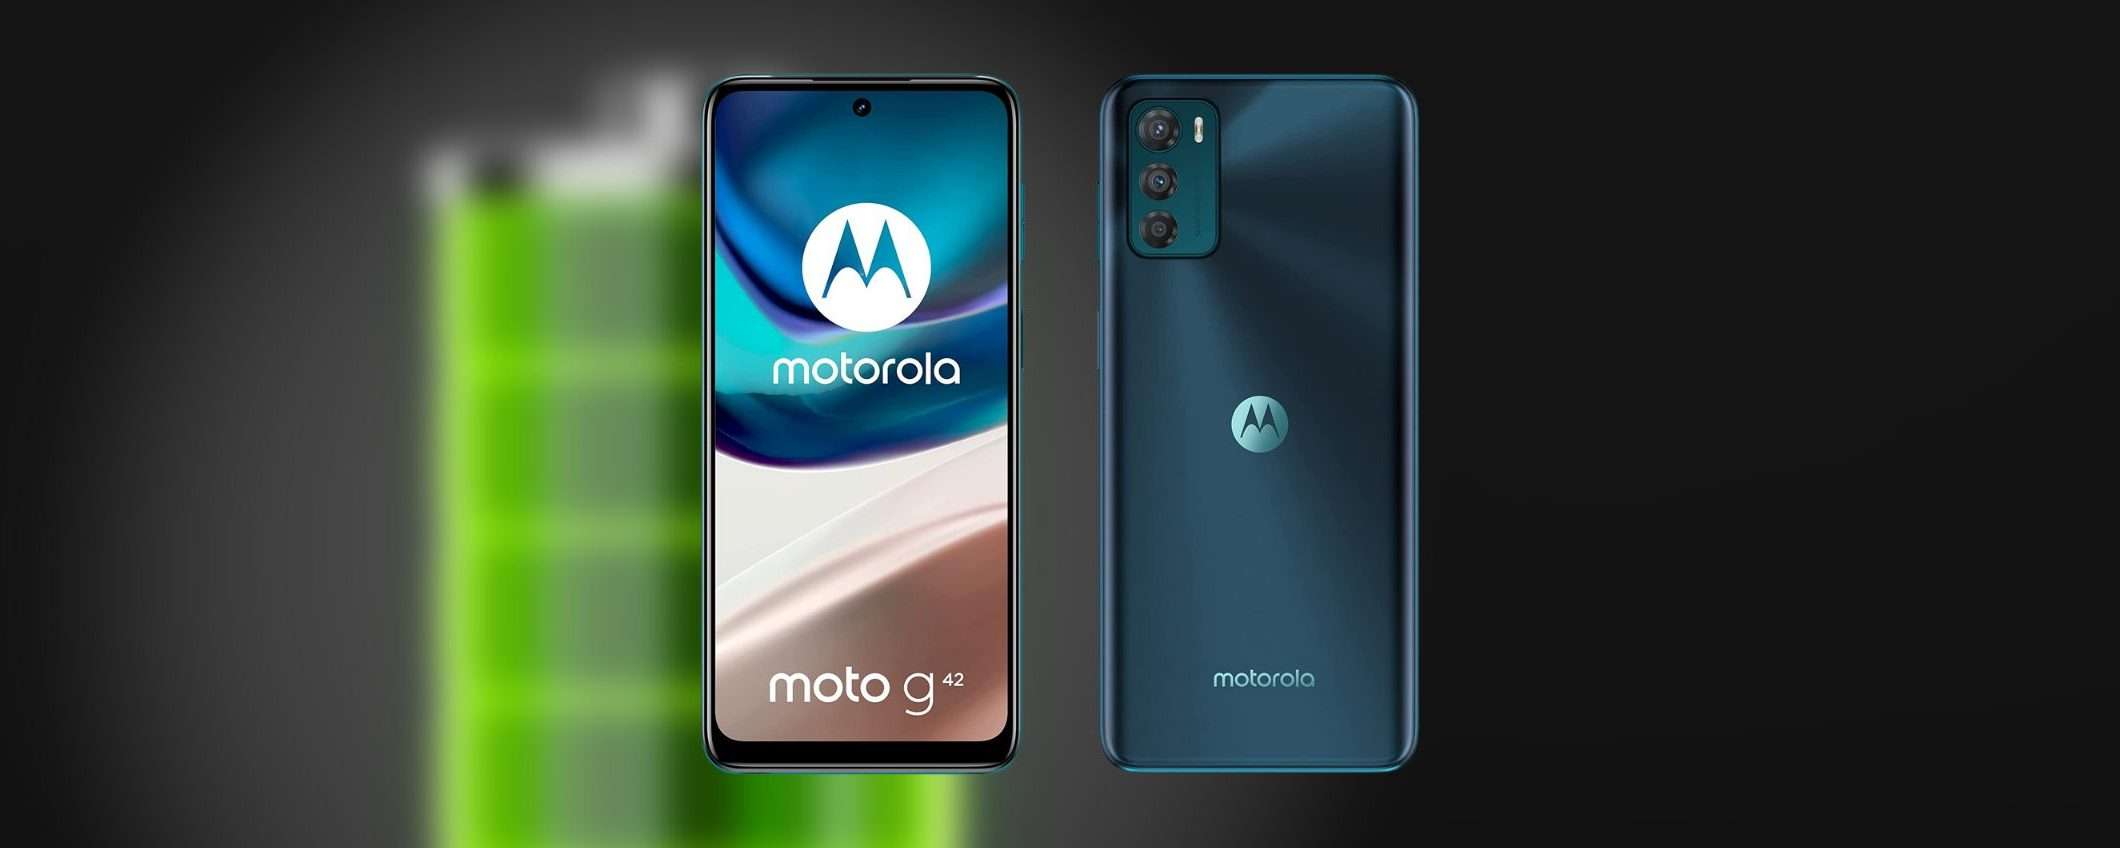 Motorola Moto G42: la batteria dura 2 giorni e lo paghi solo 159€